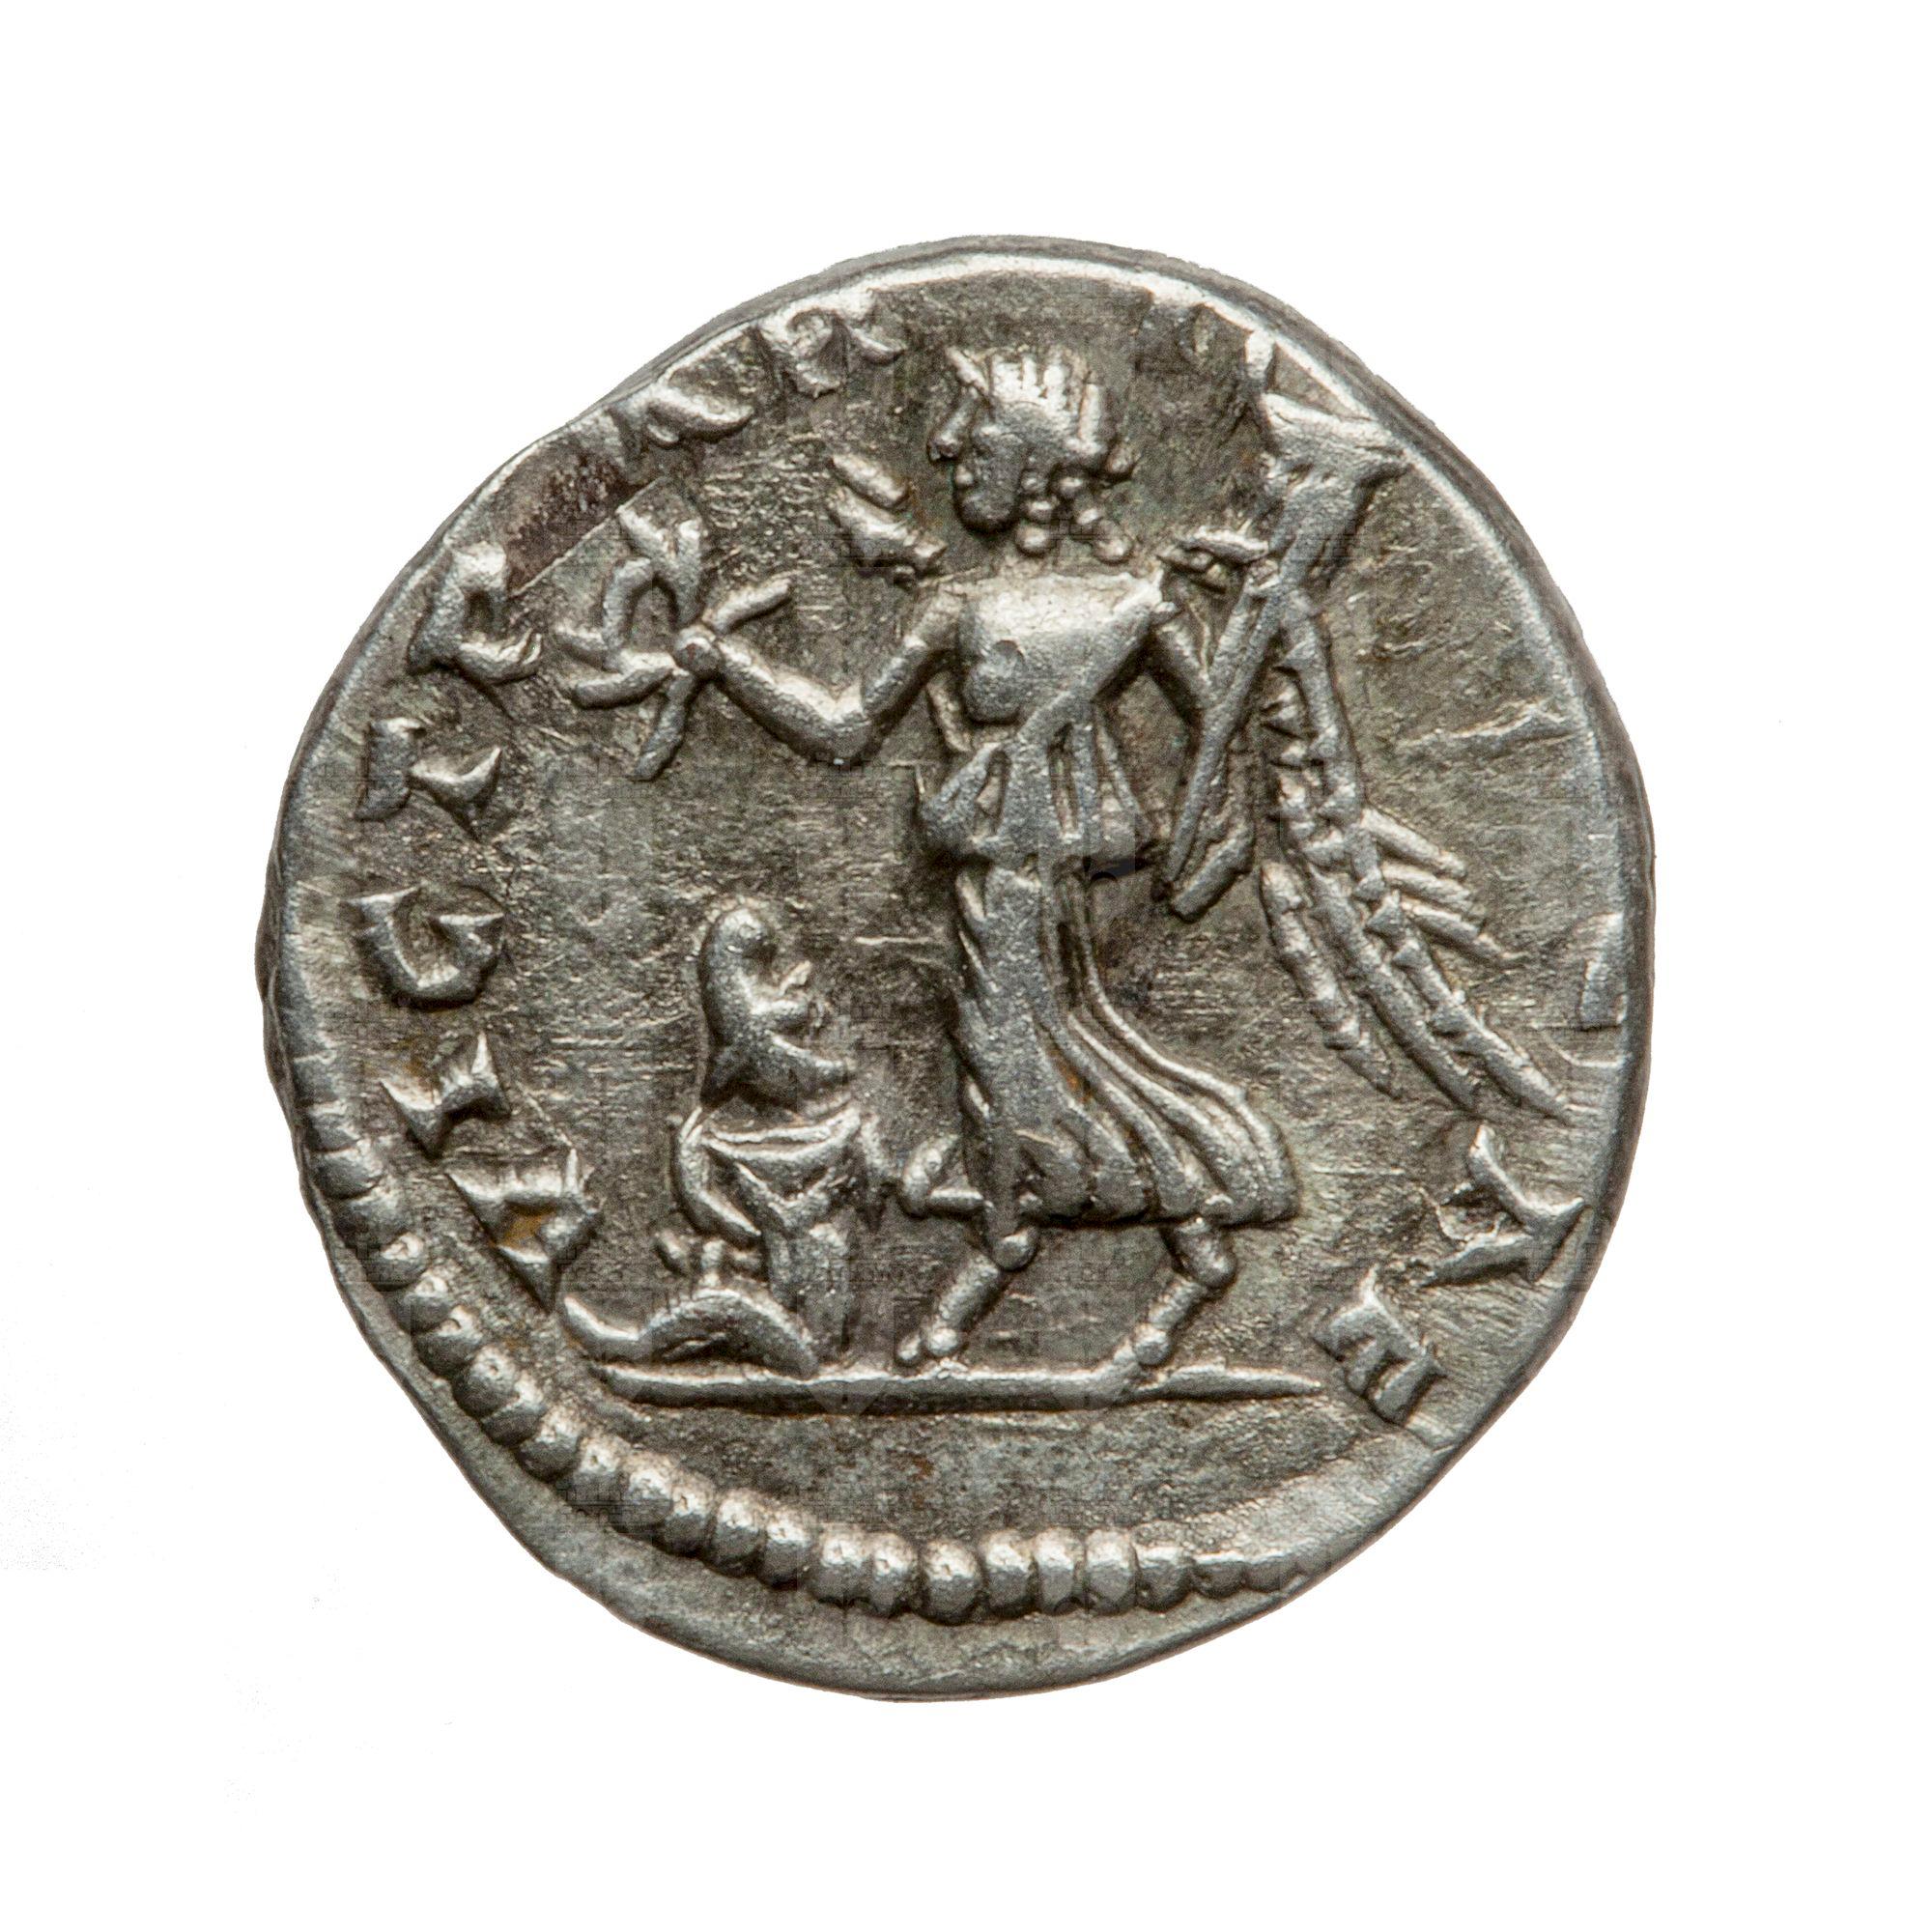 https://catalogomusei.comune.trieste.it/samira/resource/image/reperti-archeologici/Roma 1188 R Settimio Severo.jpg?token=65e6bacc0aa7a